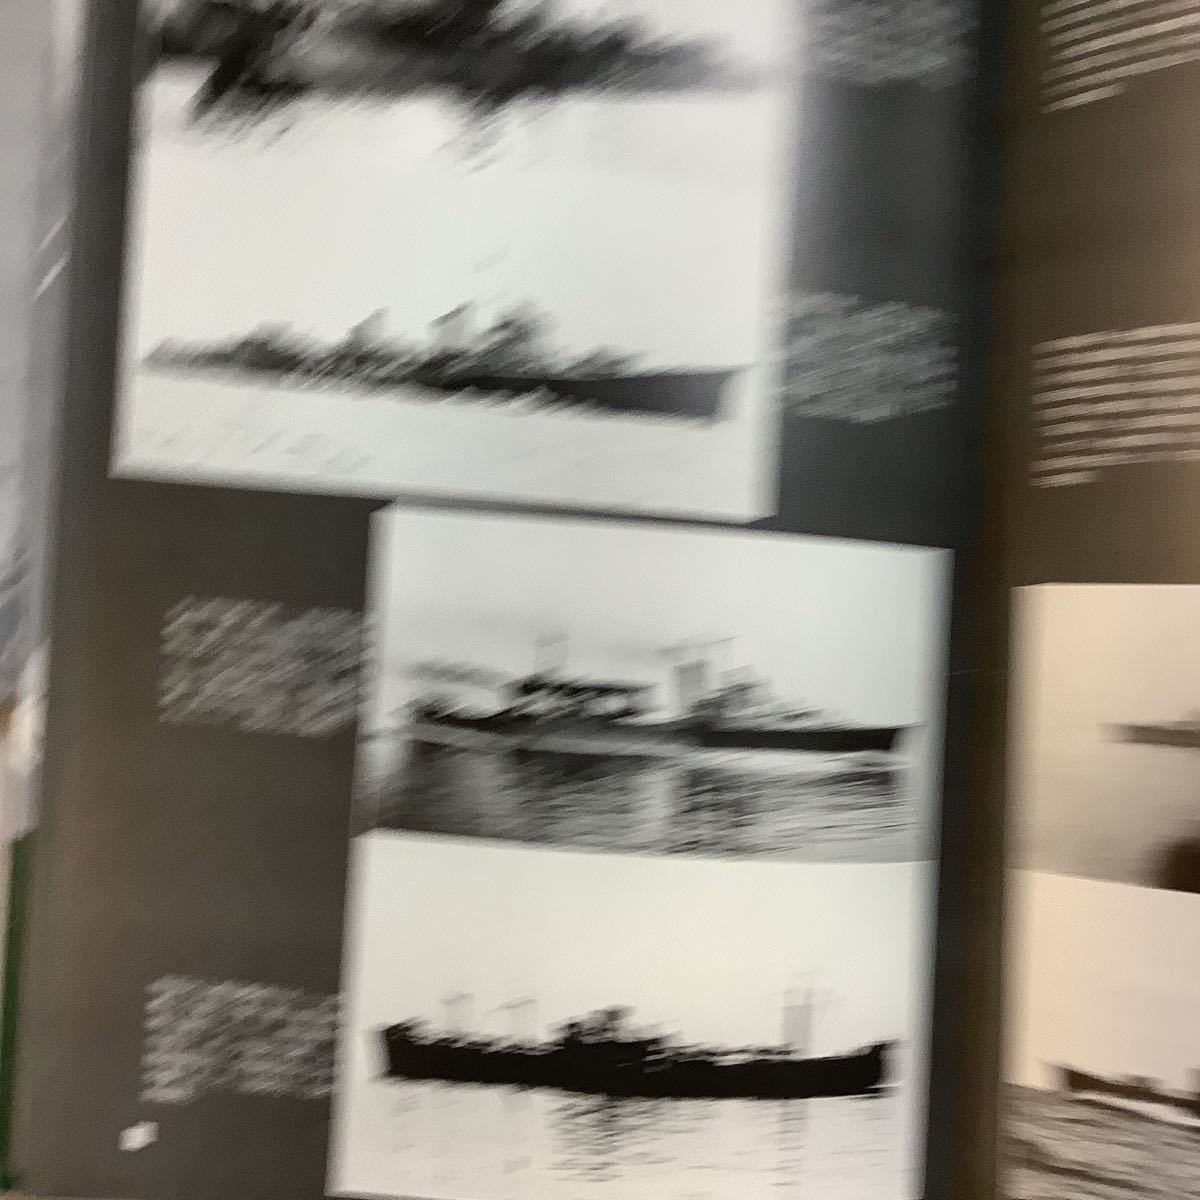 【光人社】写真・太平洋戦争　全5巻　昭和史ドキュメント